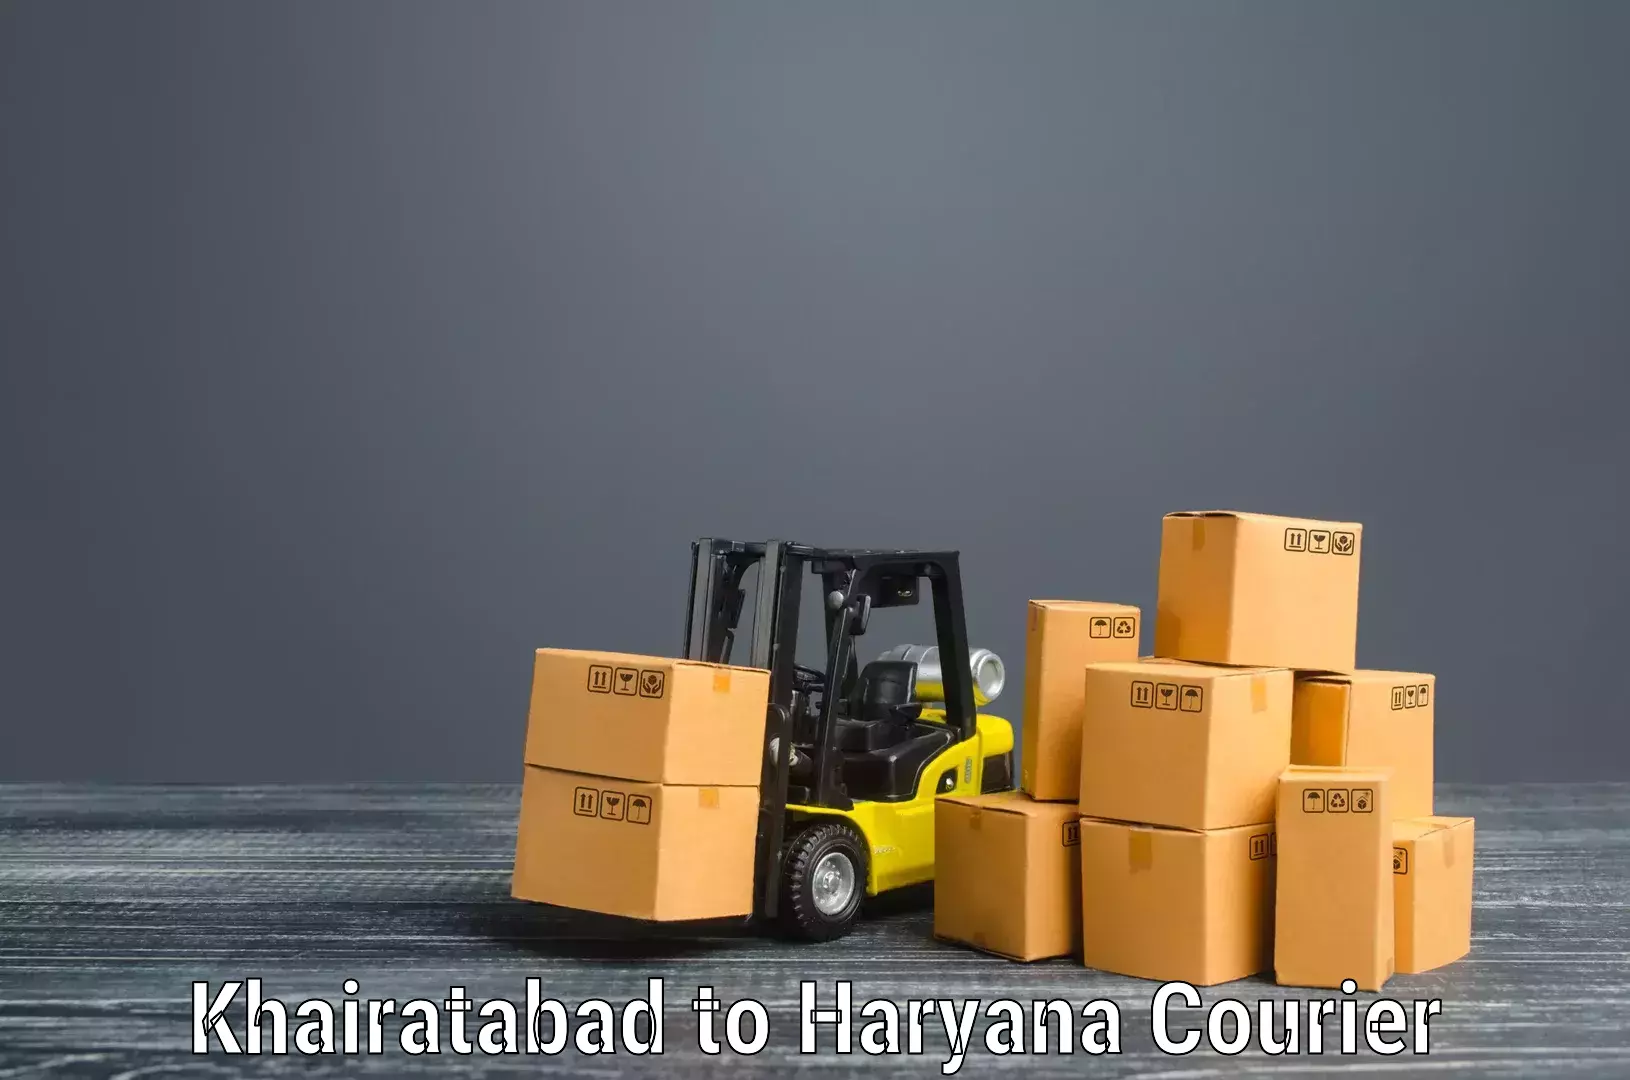 Professional movers Khairatabad to Shahabad Markanda